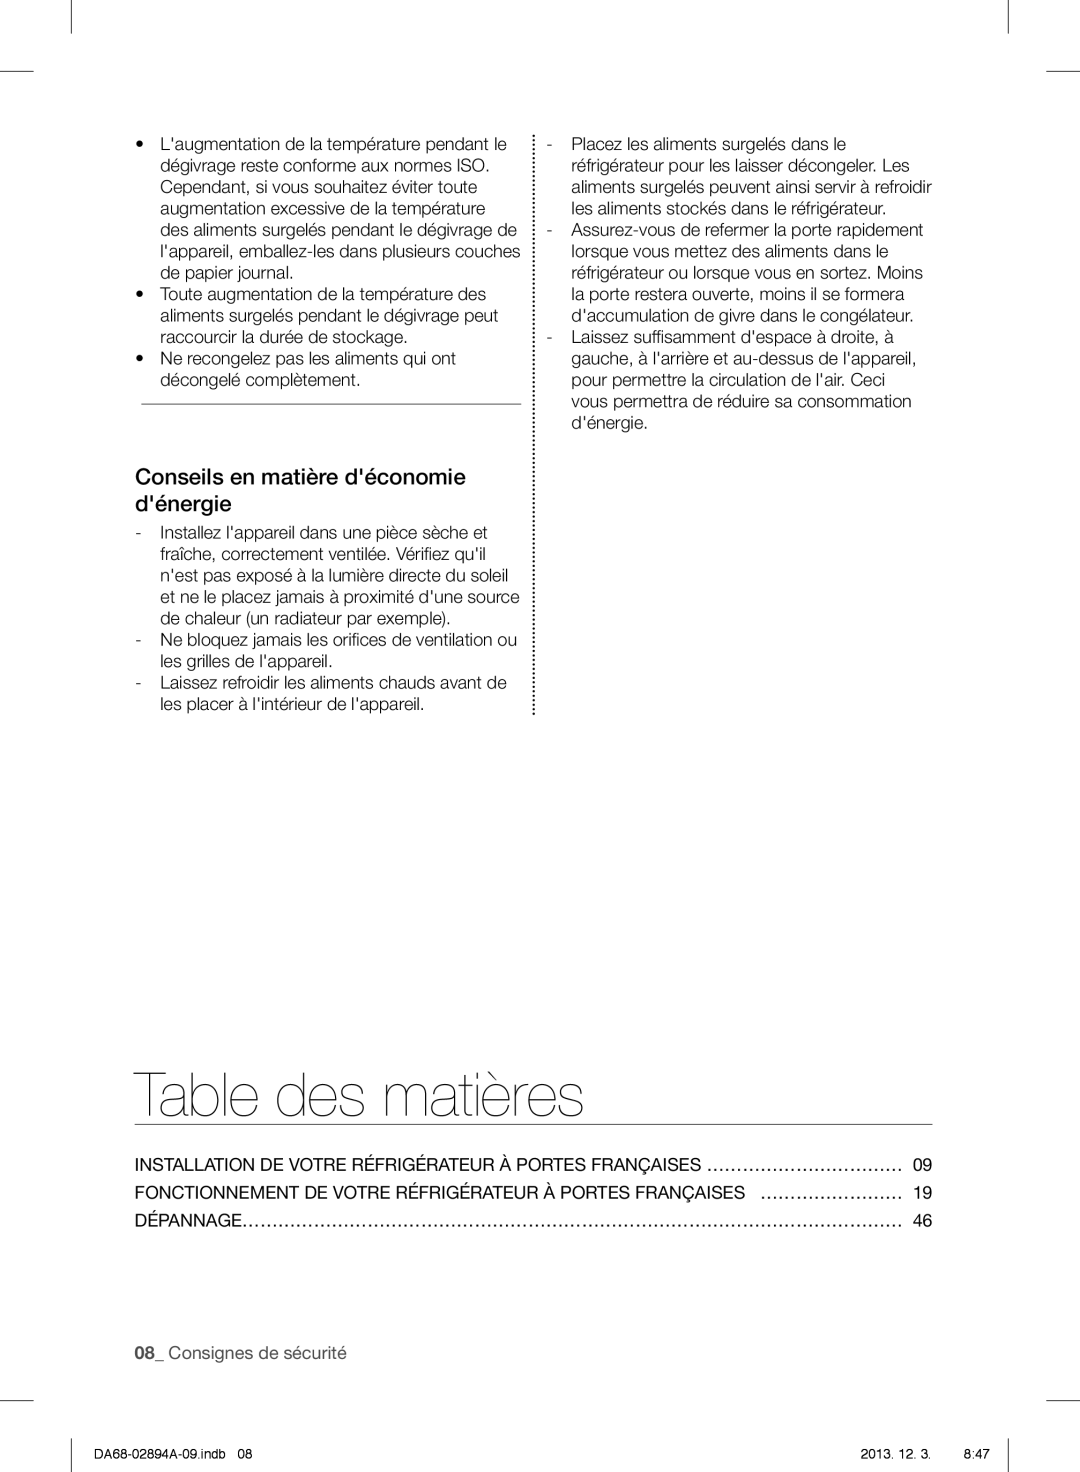 Samsung RF31FMESBSR, RF31FMEDBSR Table des matières, Conseils en matière déconomie dénergie, Consignes de sécurité 